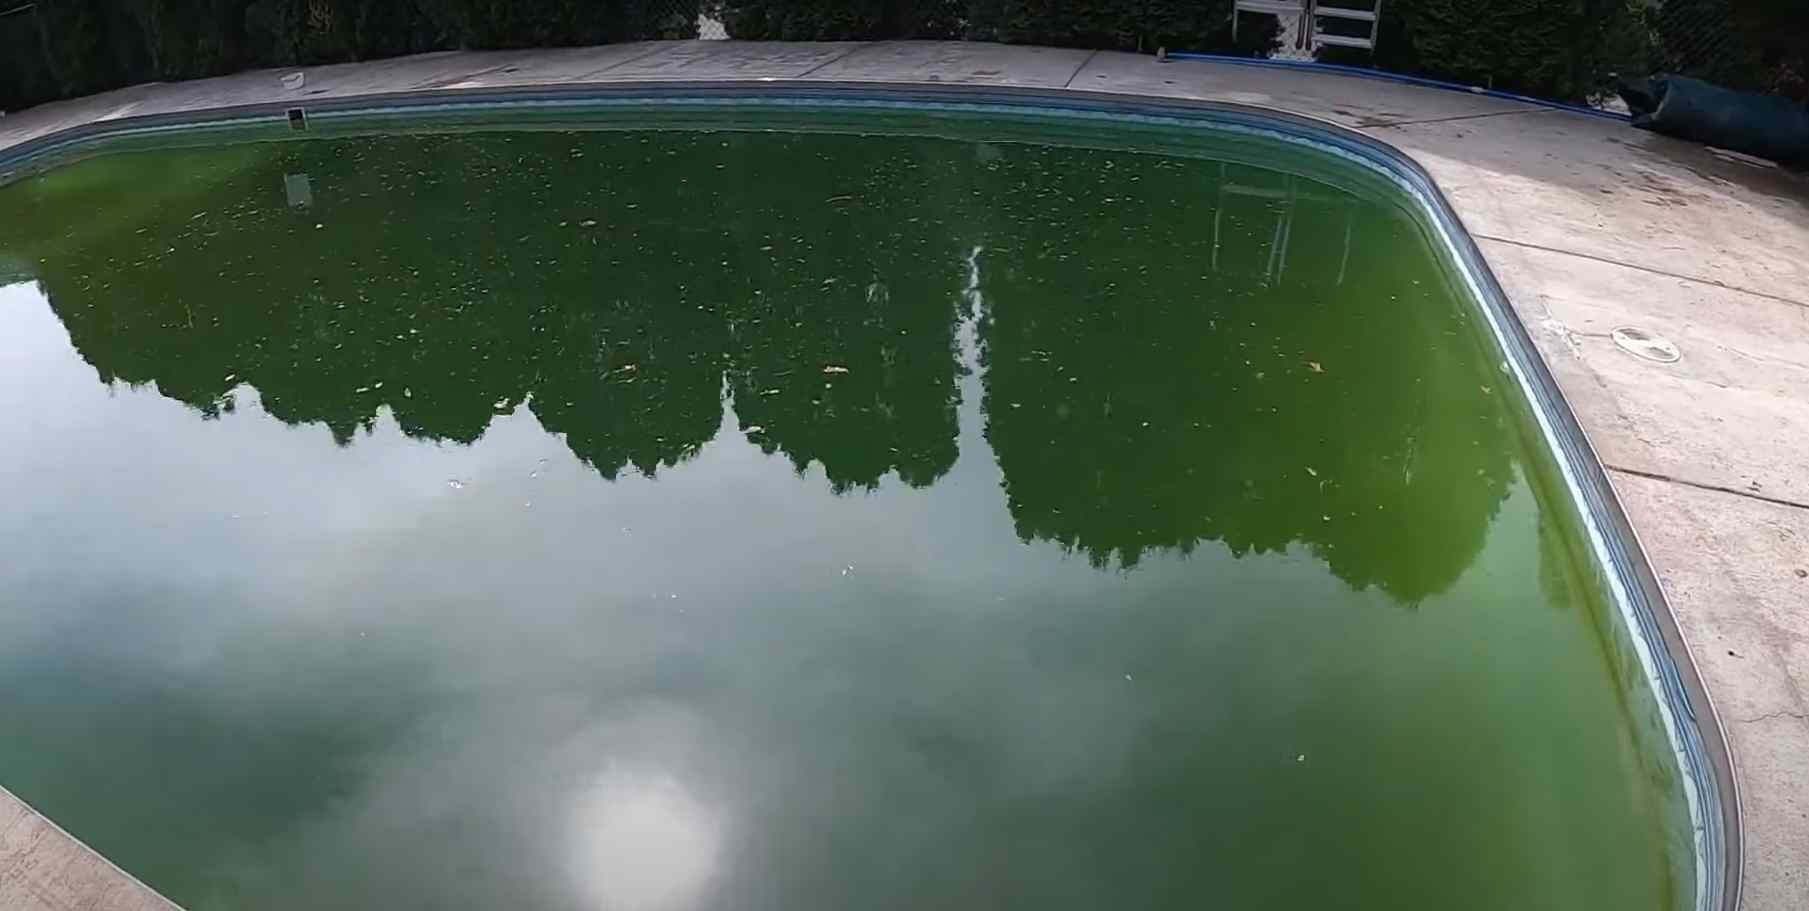 Green Pool